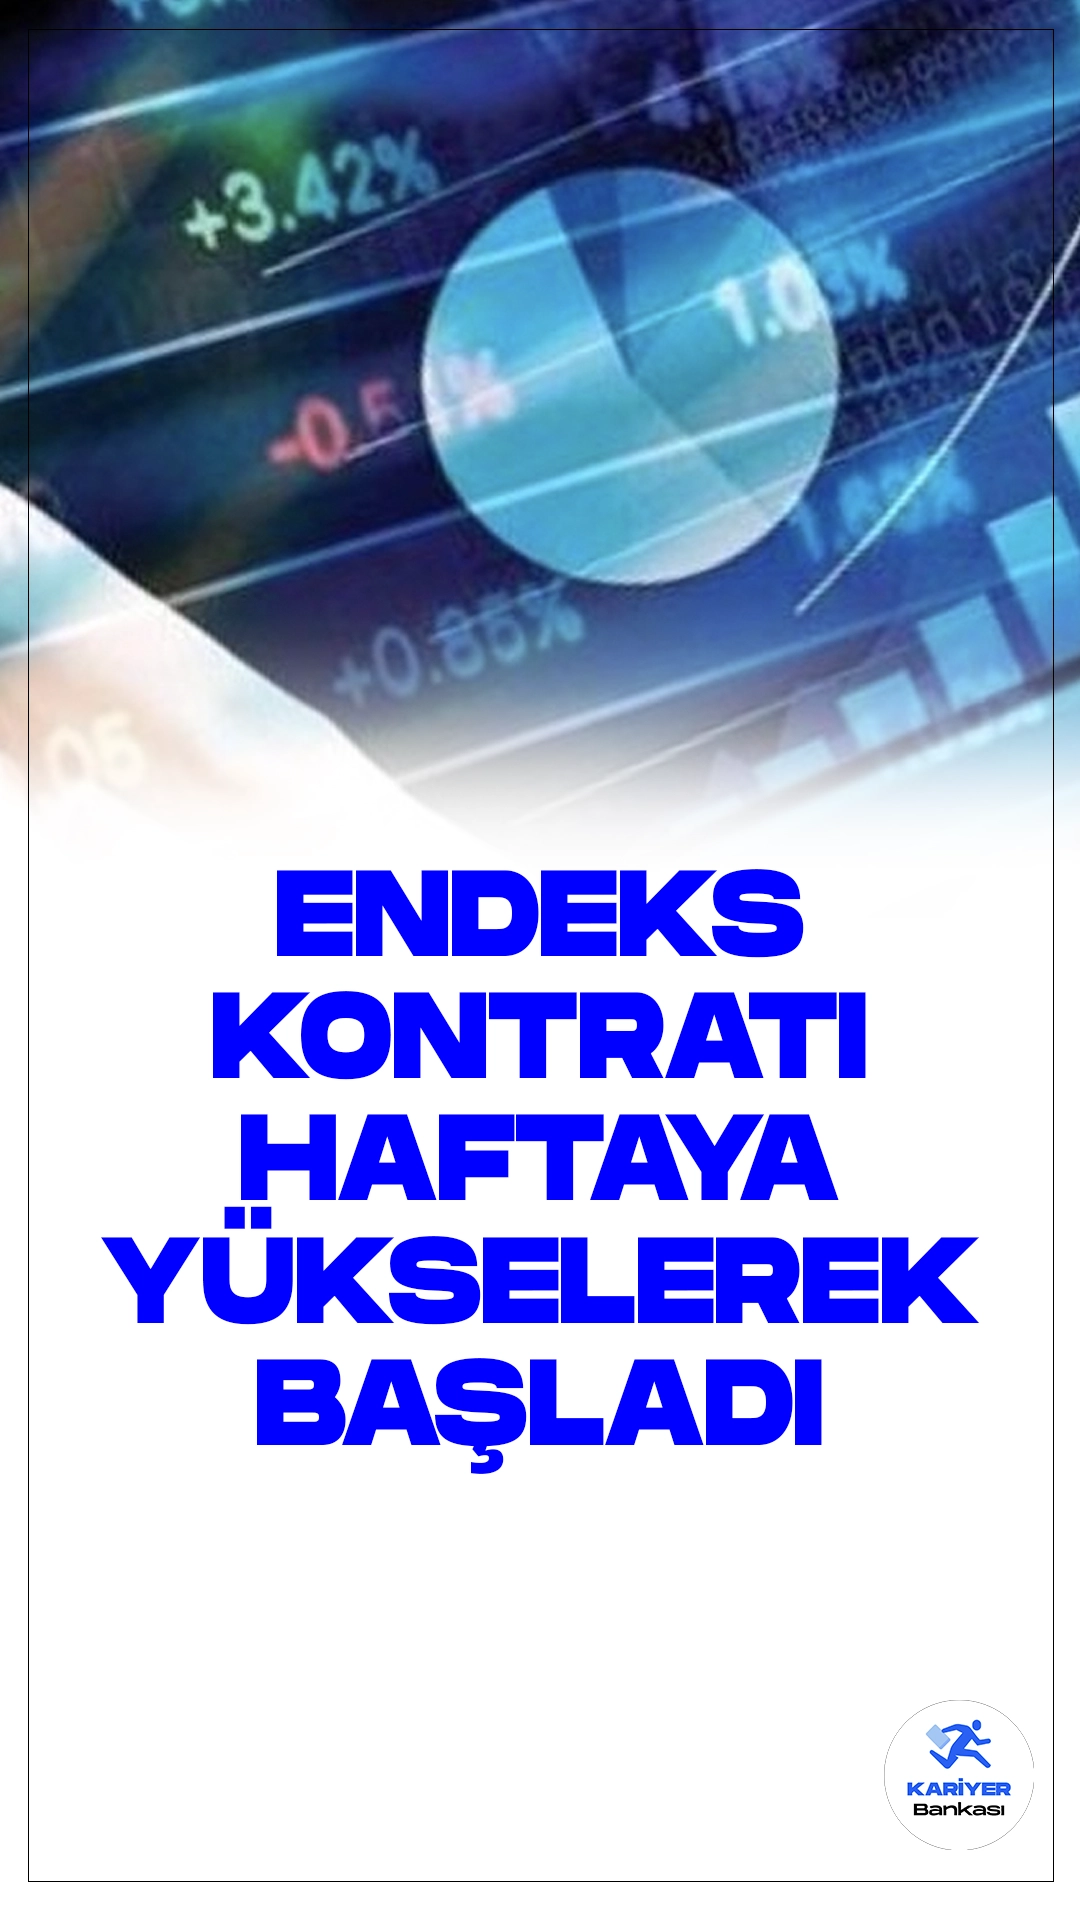 VİOP'ta Endeks Kontratı Haftaya Yükselişle Başladı.Borsa İstanbul Vadeli İşlem ve Opsiyon Piyasası'nda (VİOP) nisan vadeli BIST 30 endeksine dayalı kontrat, yeni haftaya yüzde 0,3 artışla 10.106,25 puandan başladı.